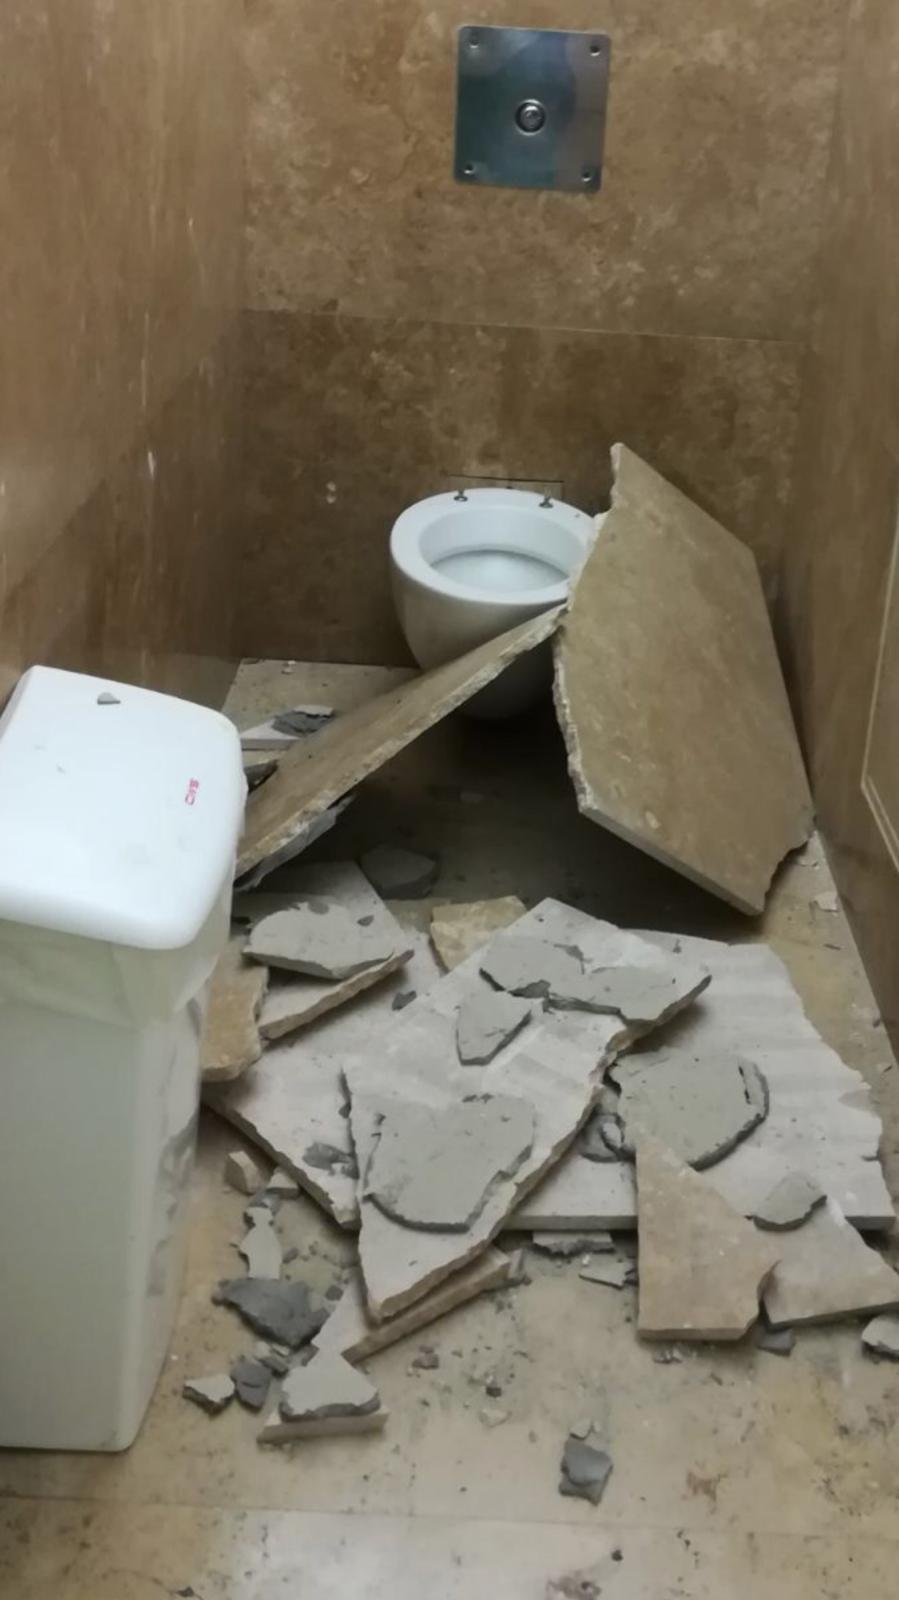 Giù pezzi travertino in bagno Uffizi, turista ferita